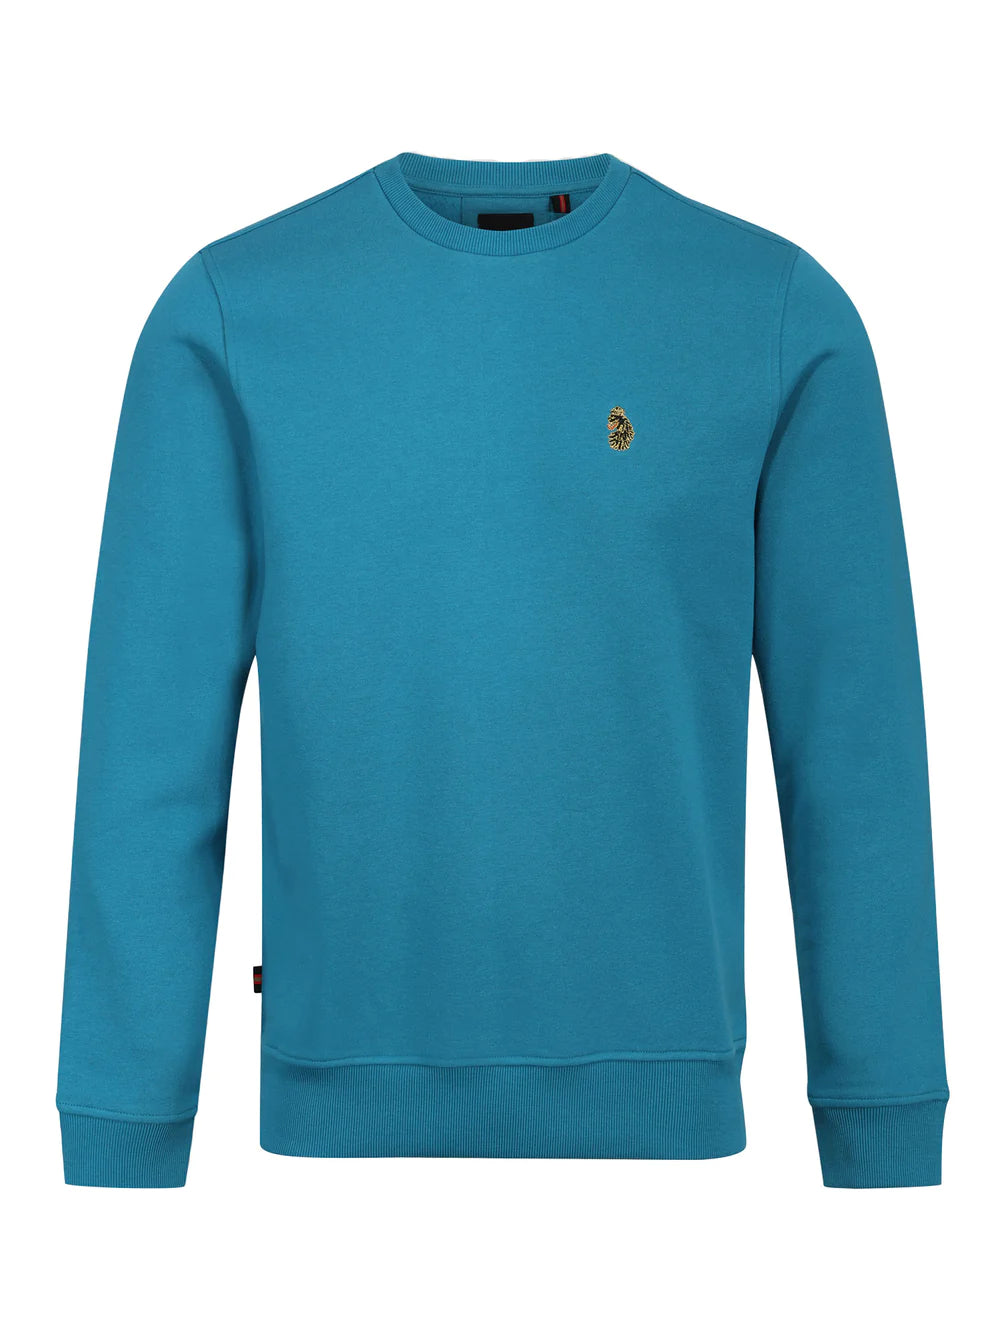 Luke 1977 - London Sweatshirt Med Blue